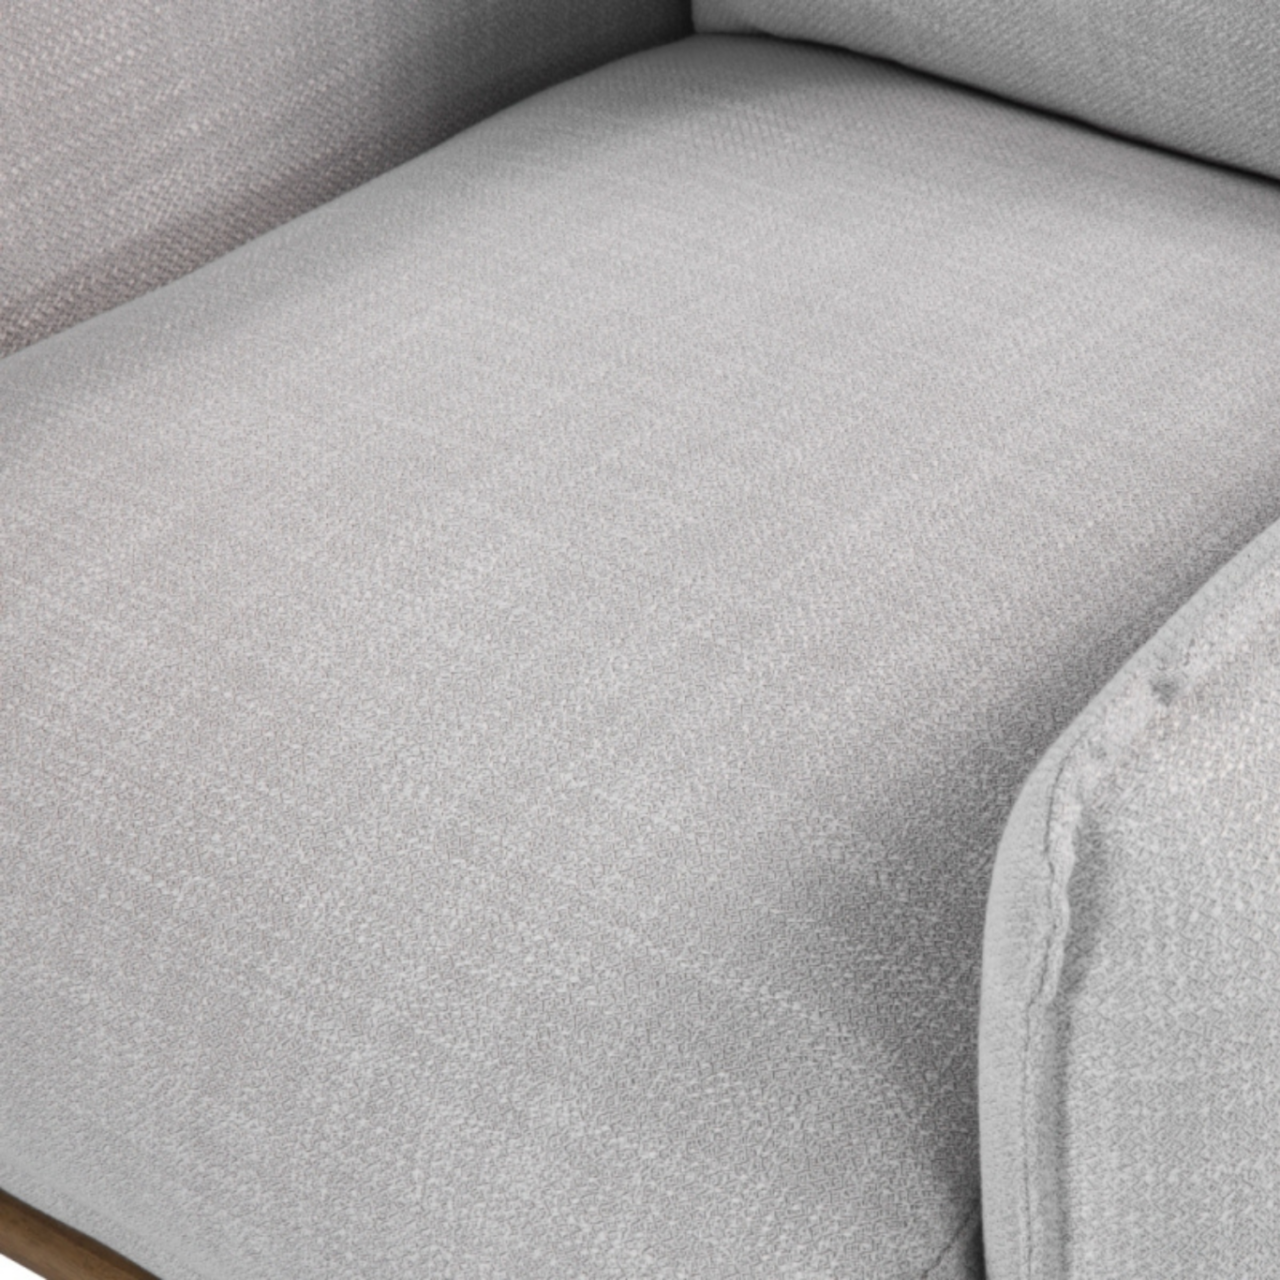 detail of modern designer armchair in grey linen upholstery